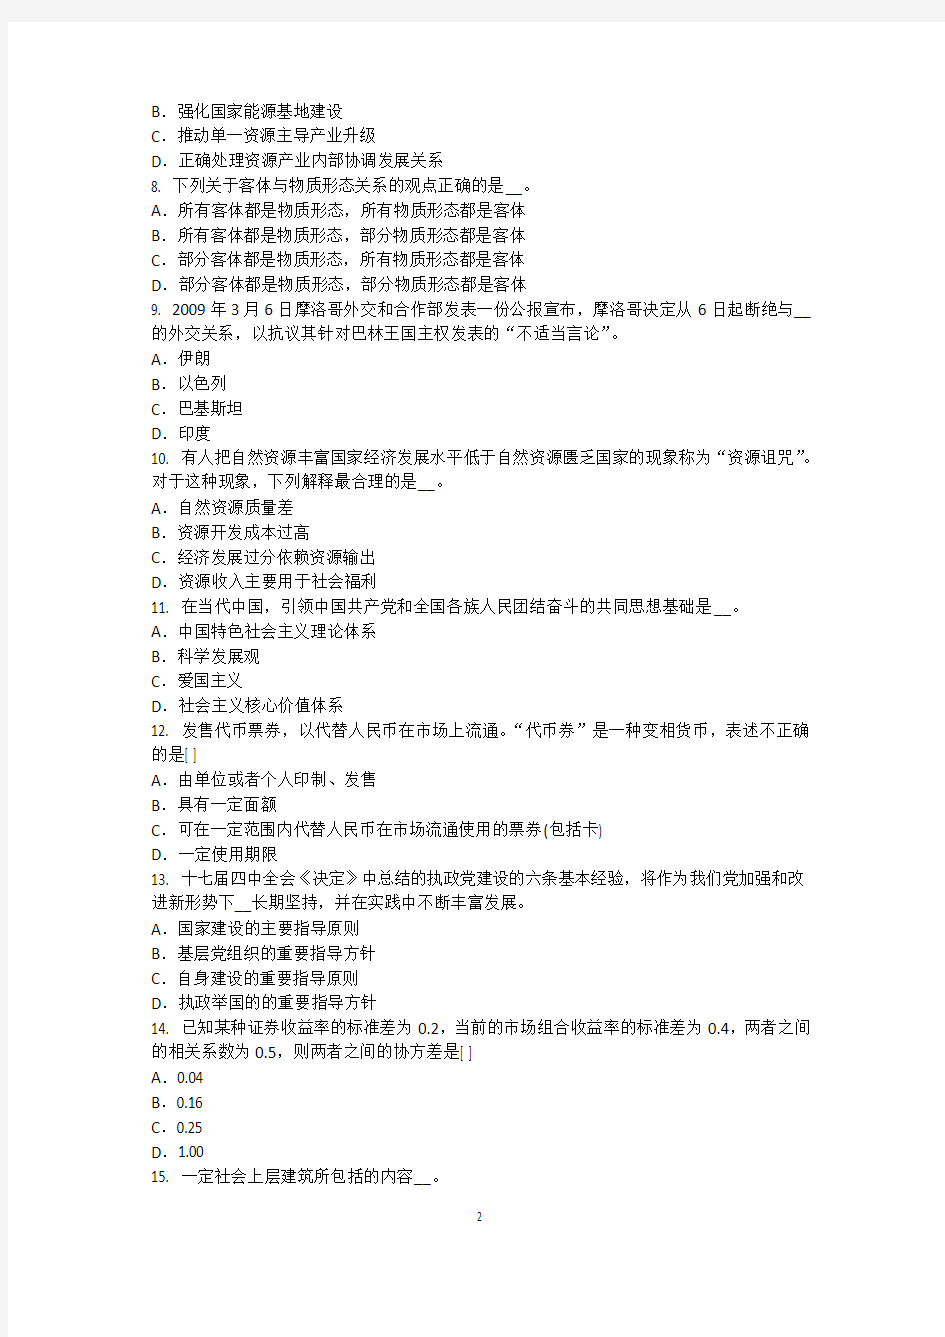 2017年上半年江西省农村信用社招聘：计算机类笔试考试试题